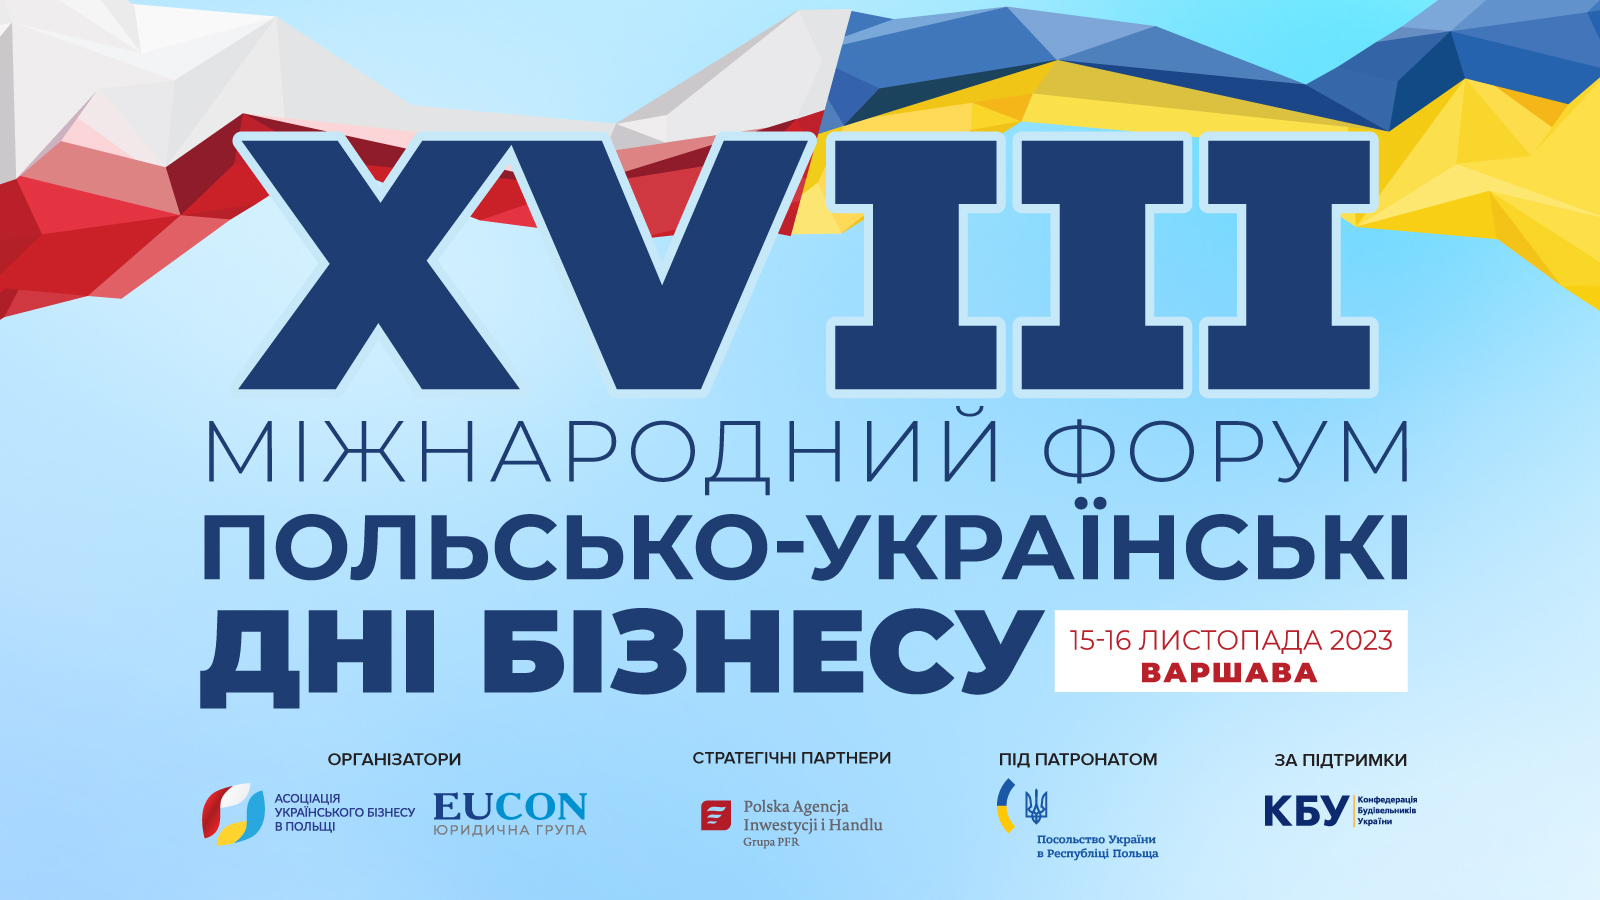 XVIIІ Міжнародний форум «Польсько-українські дні бізнесу»: реєстрація відкрита!